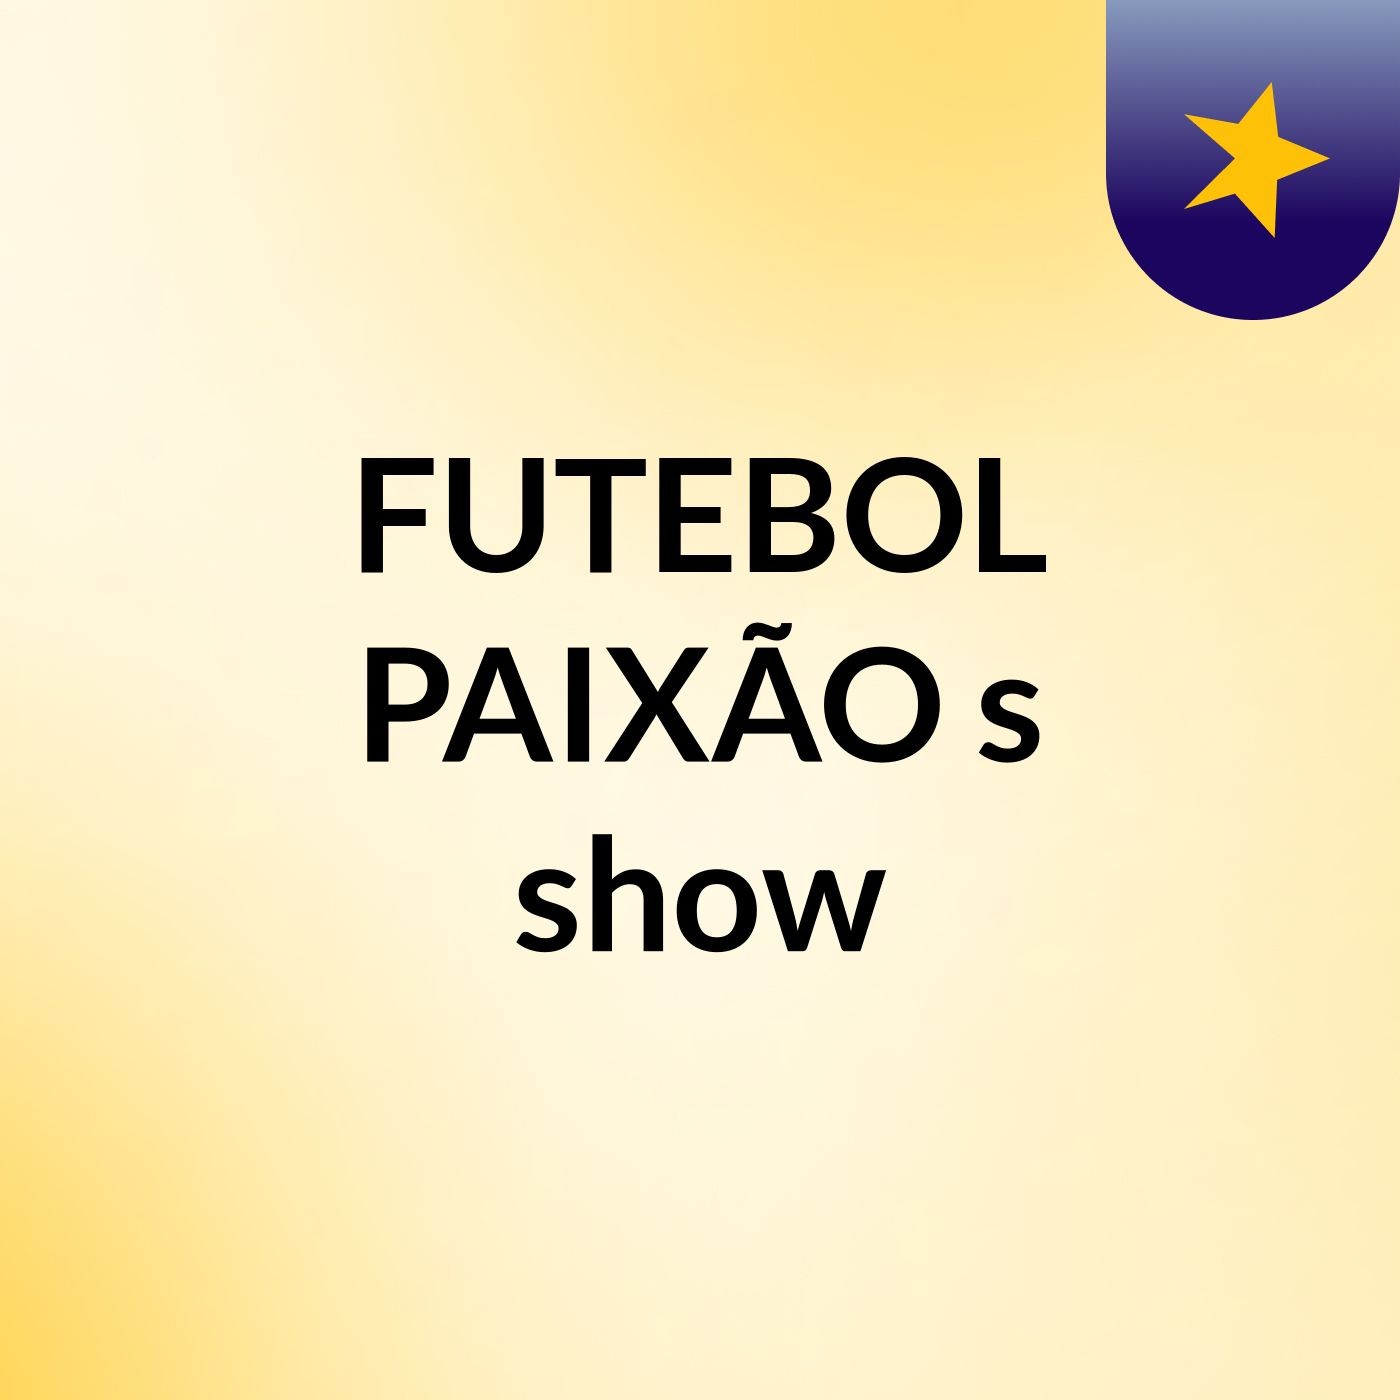 FUTEBOL PAIXÃO's show